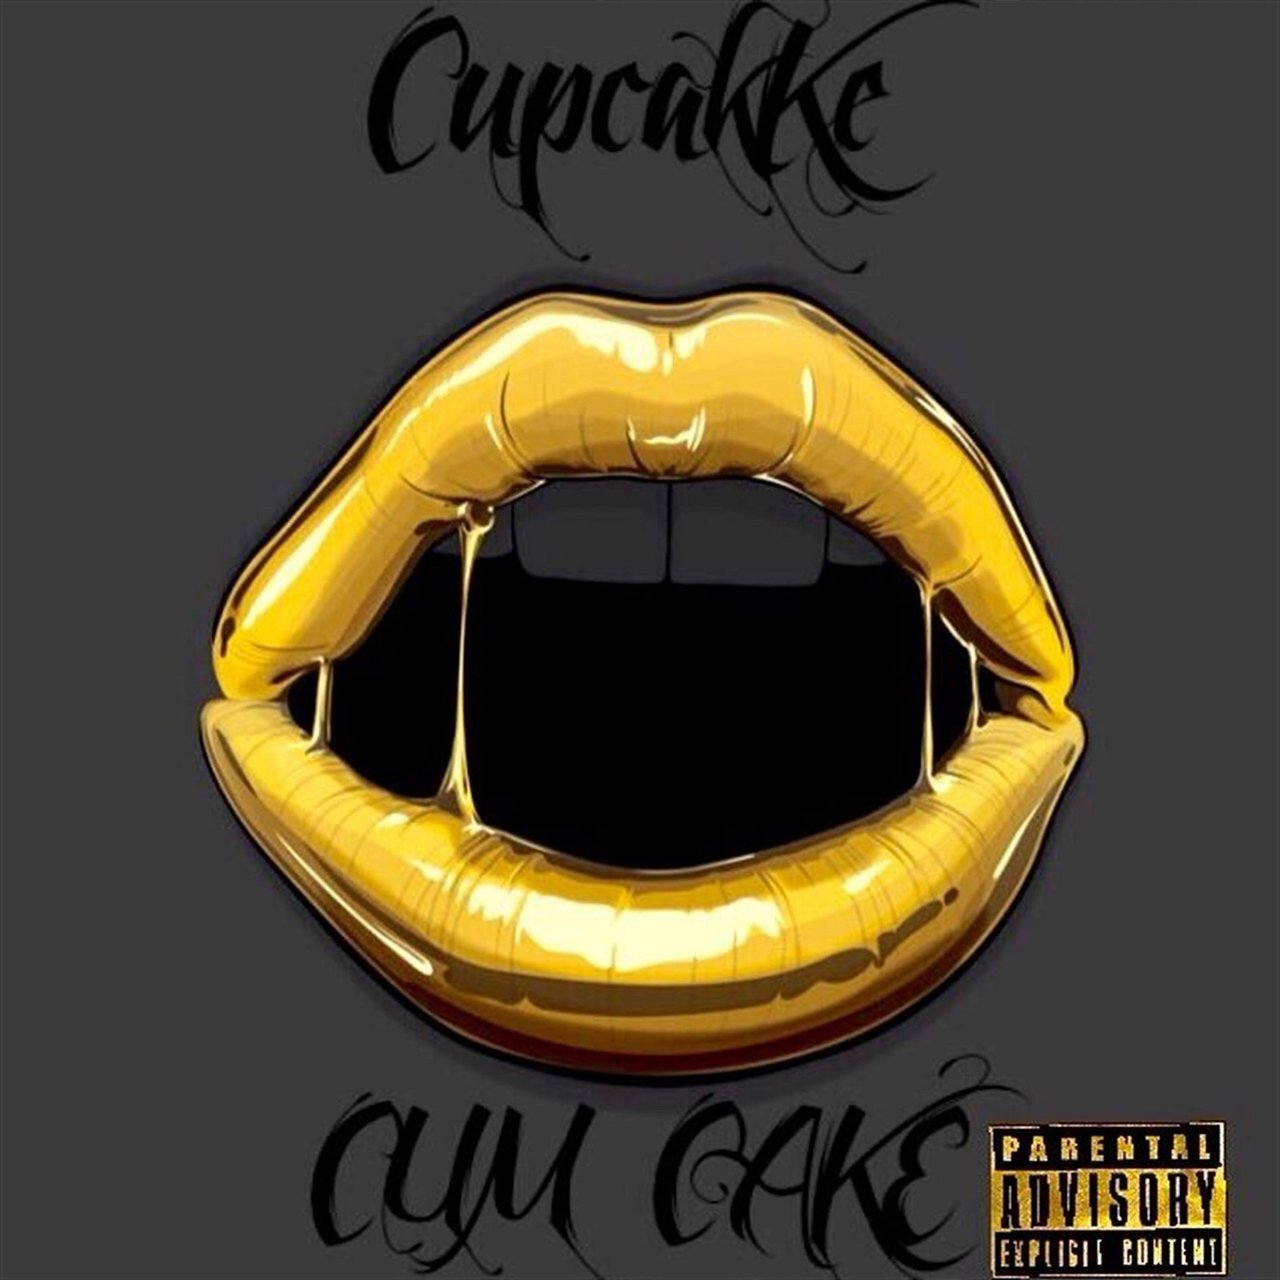 CupcakKe Cum Cake cover artwork